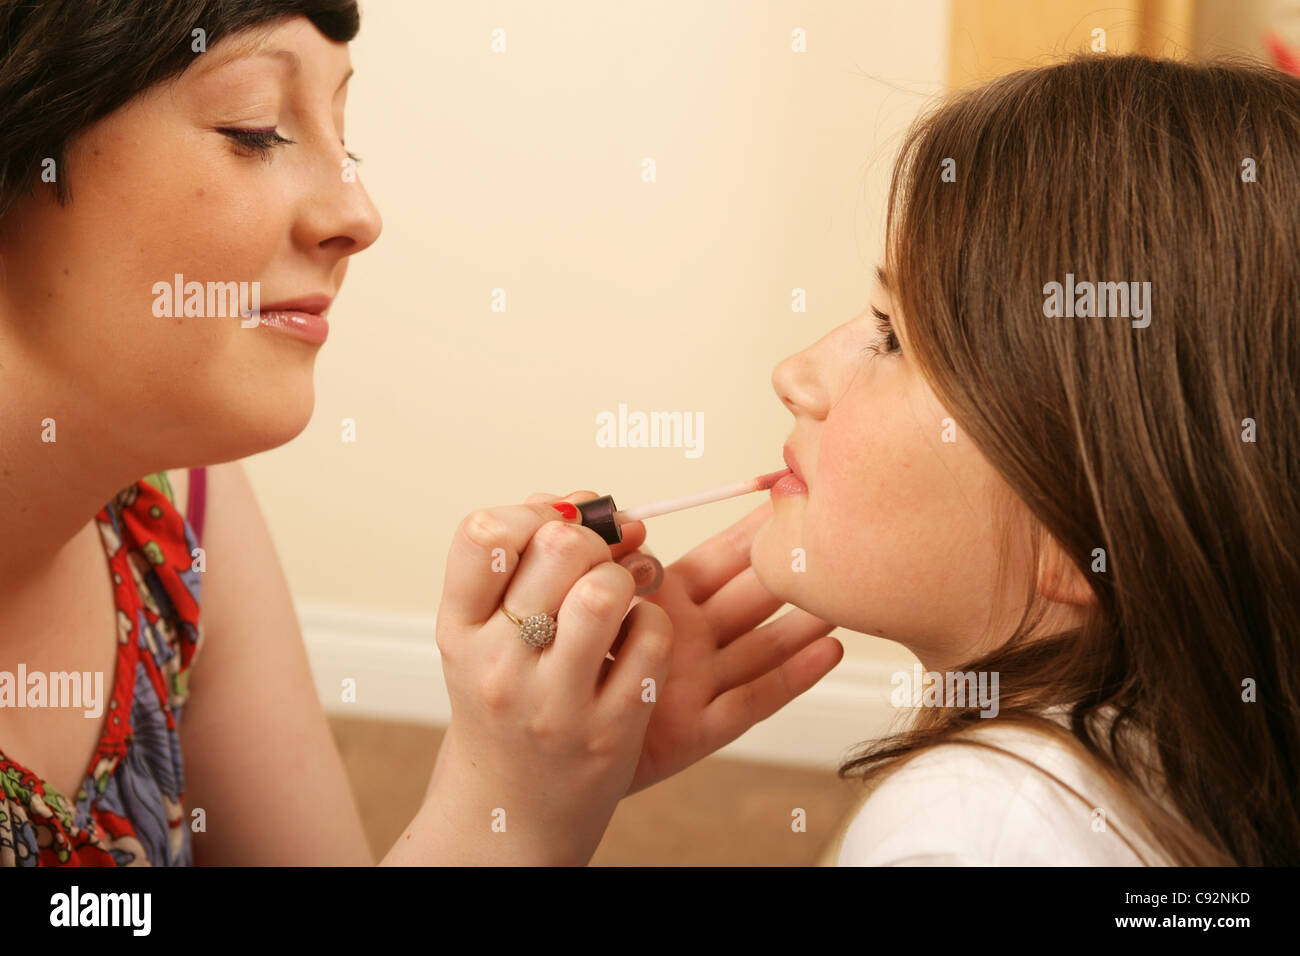 La hermana mayor, aplicar brillo labial a su hermana menor. Foto de stock